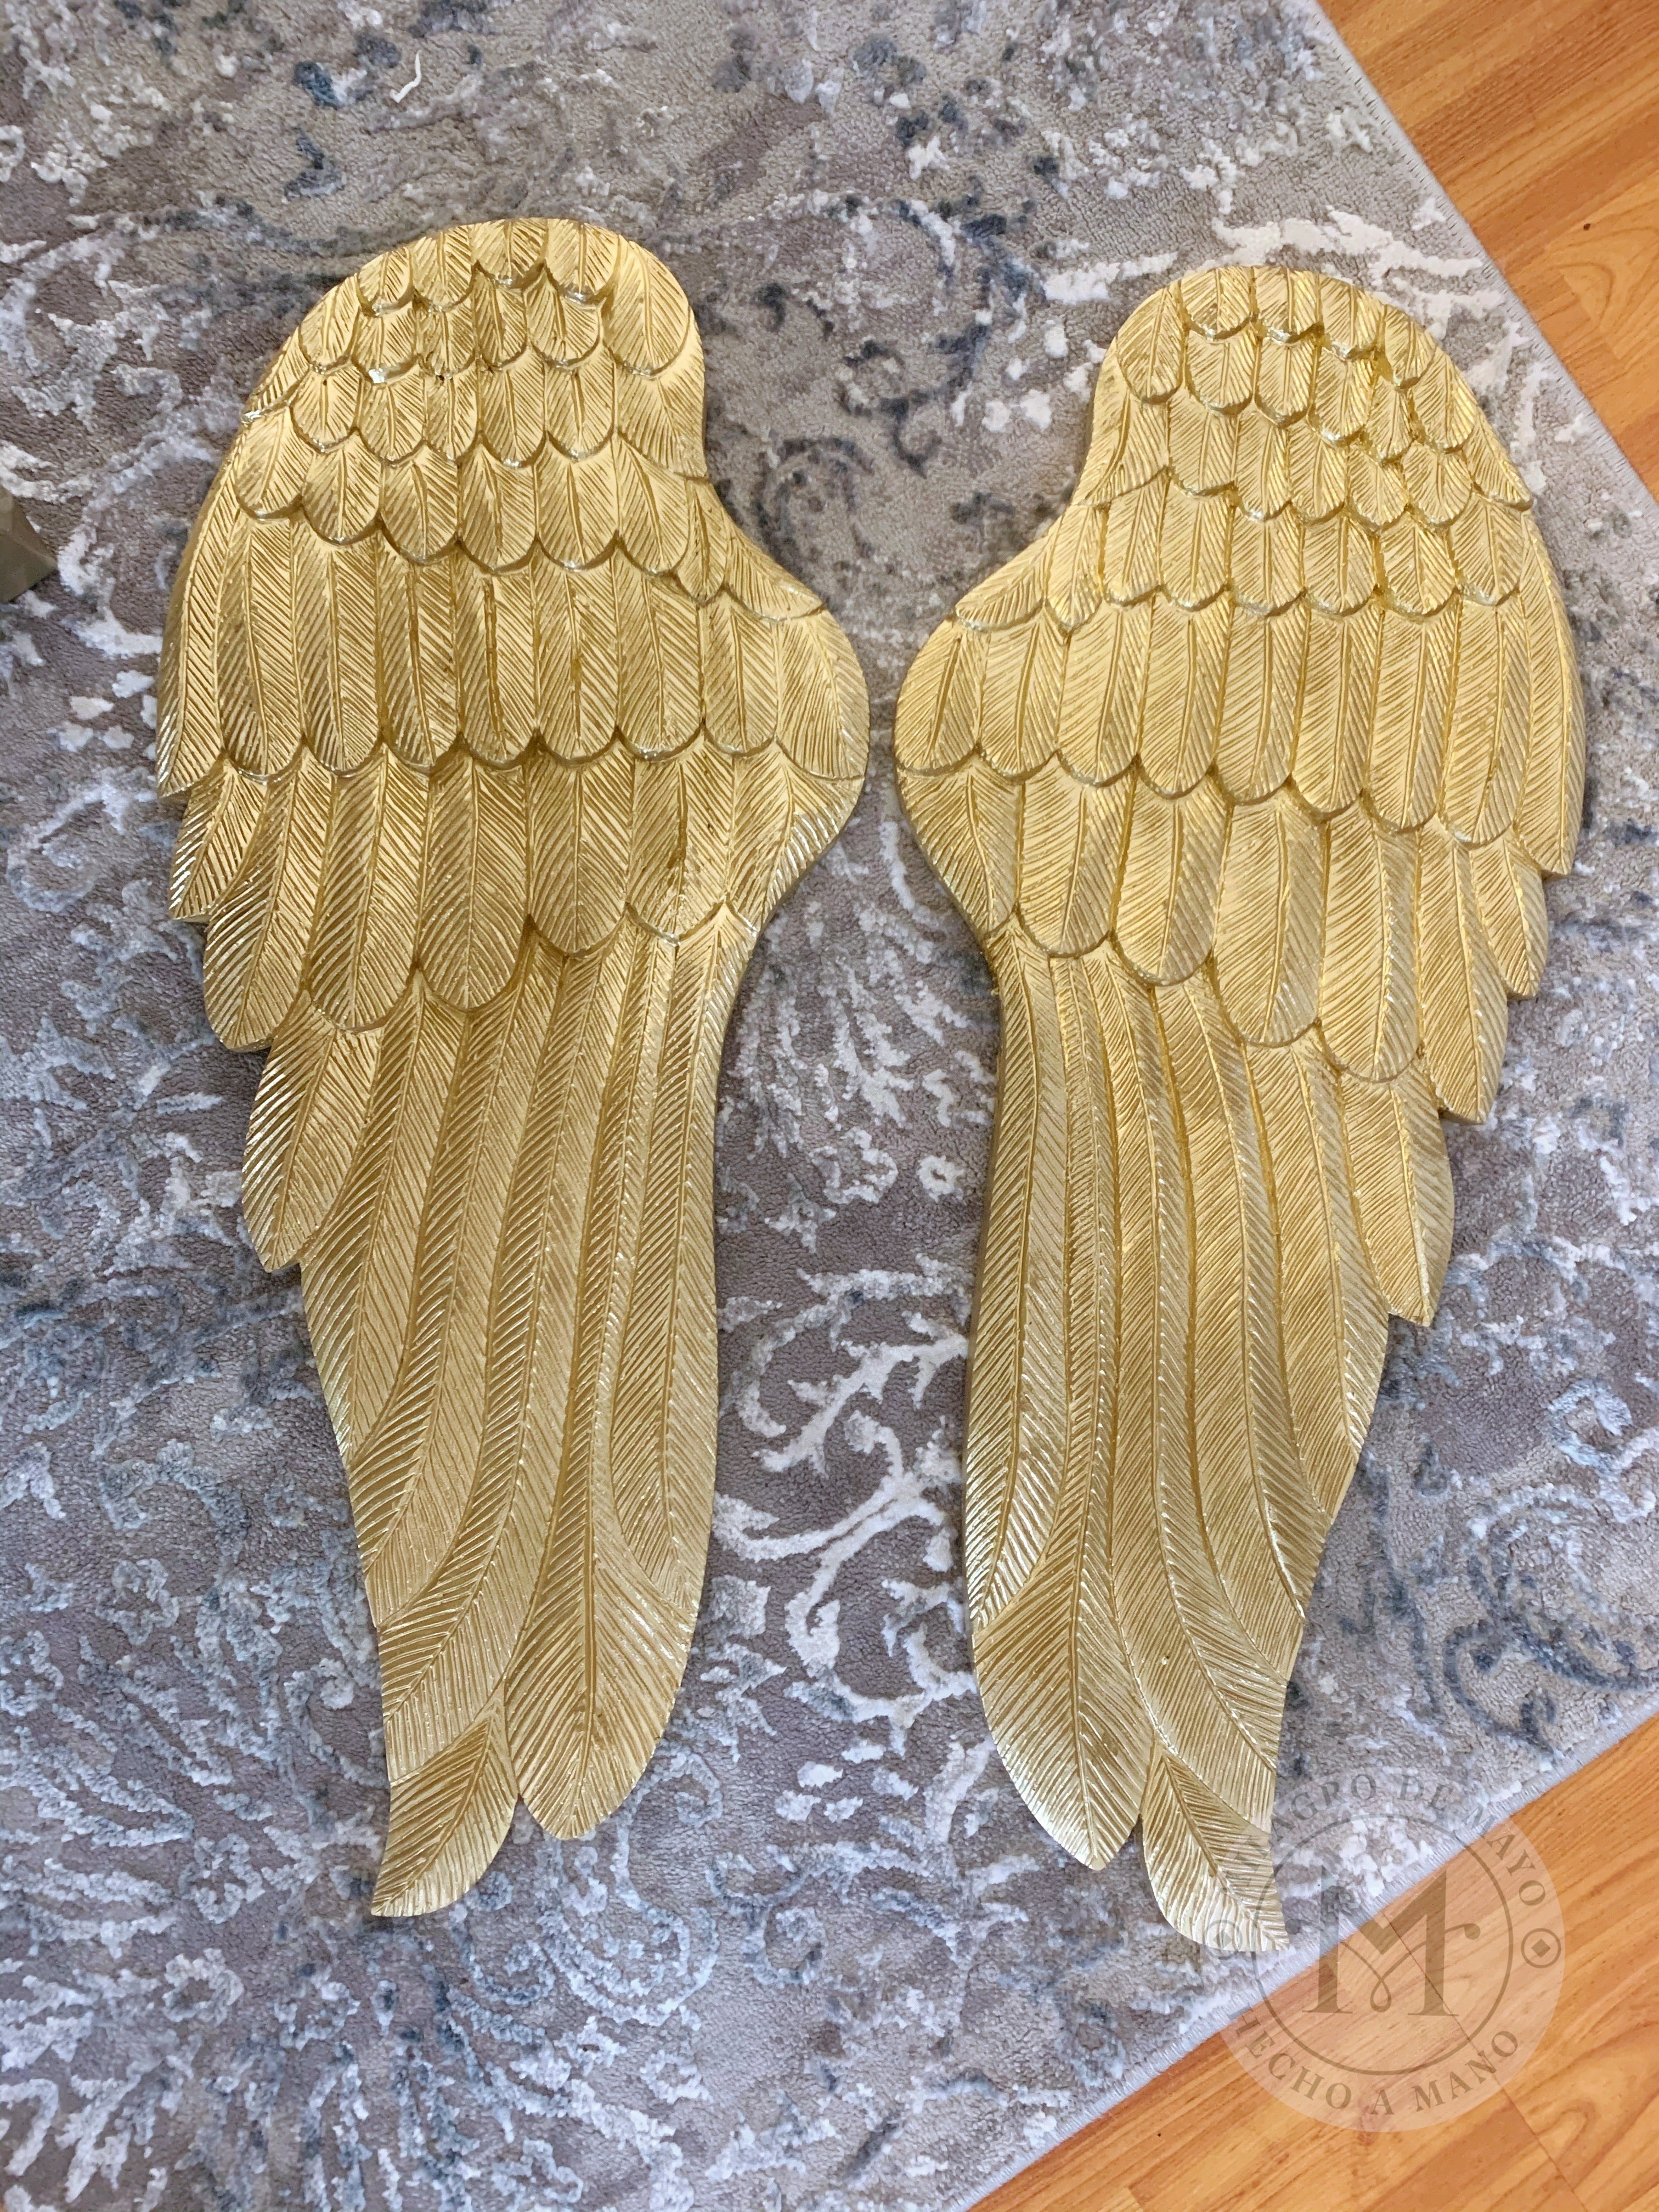 Carved angel wings